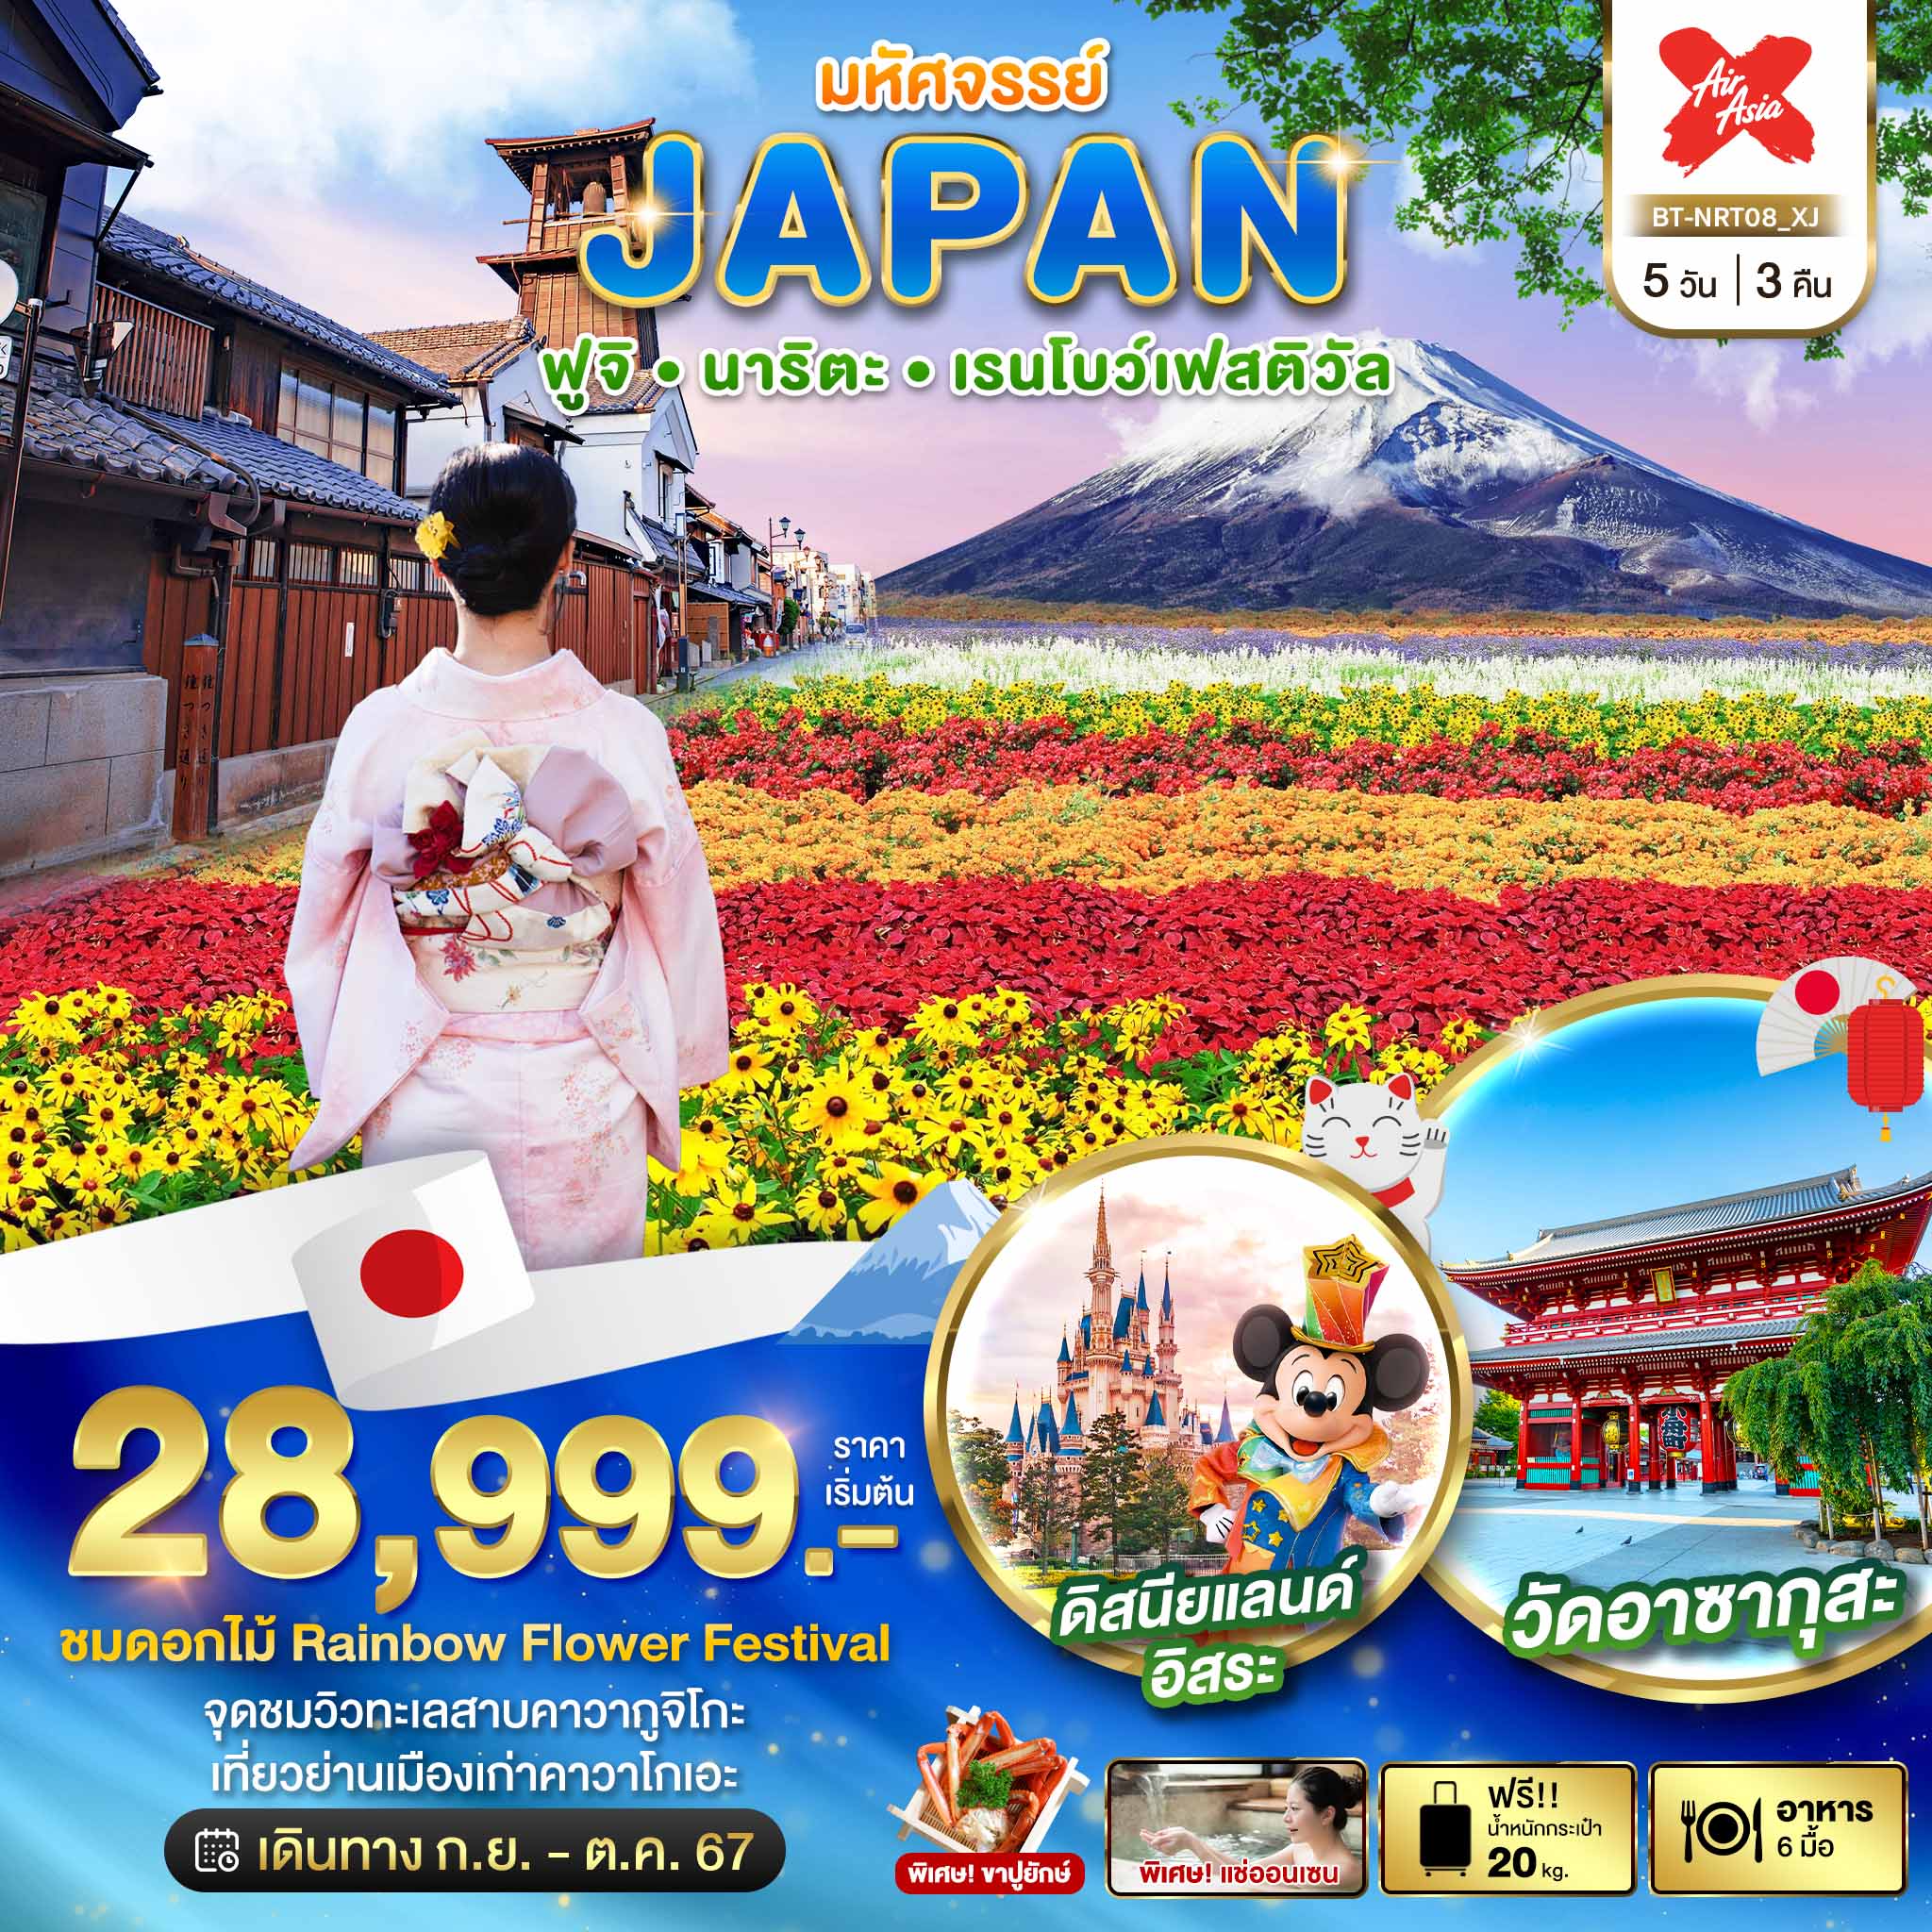 ทัวร์ญี่ปุ่น มหัศจรรย์ JAPAN ฟูจิ นาริตะ เรนโบว์เฟสติวัล 5วัน 3คืน (XJ)